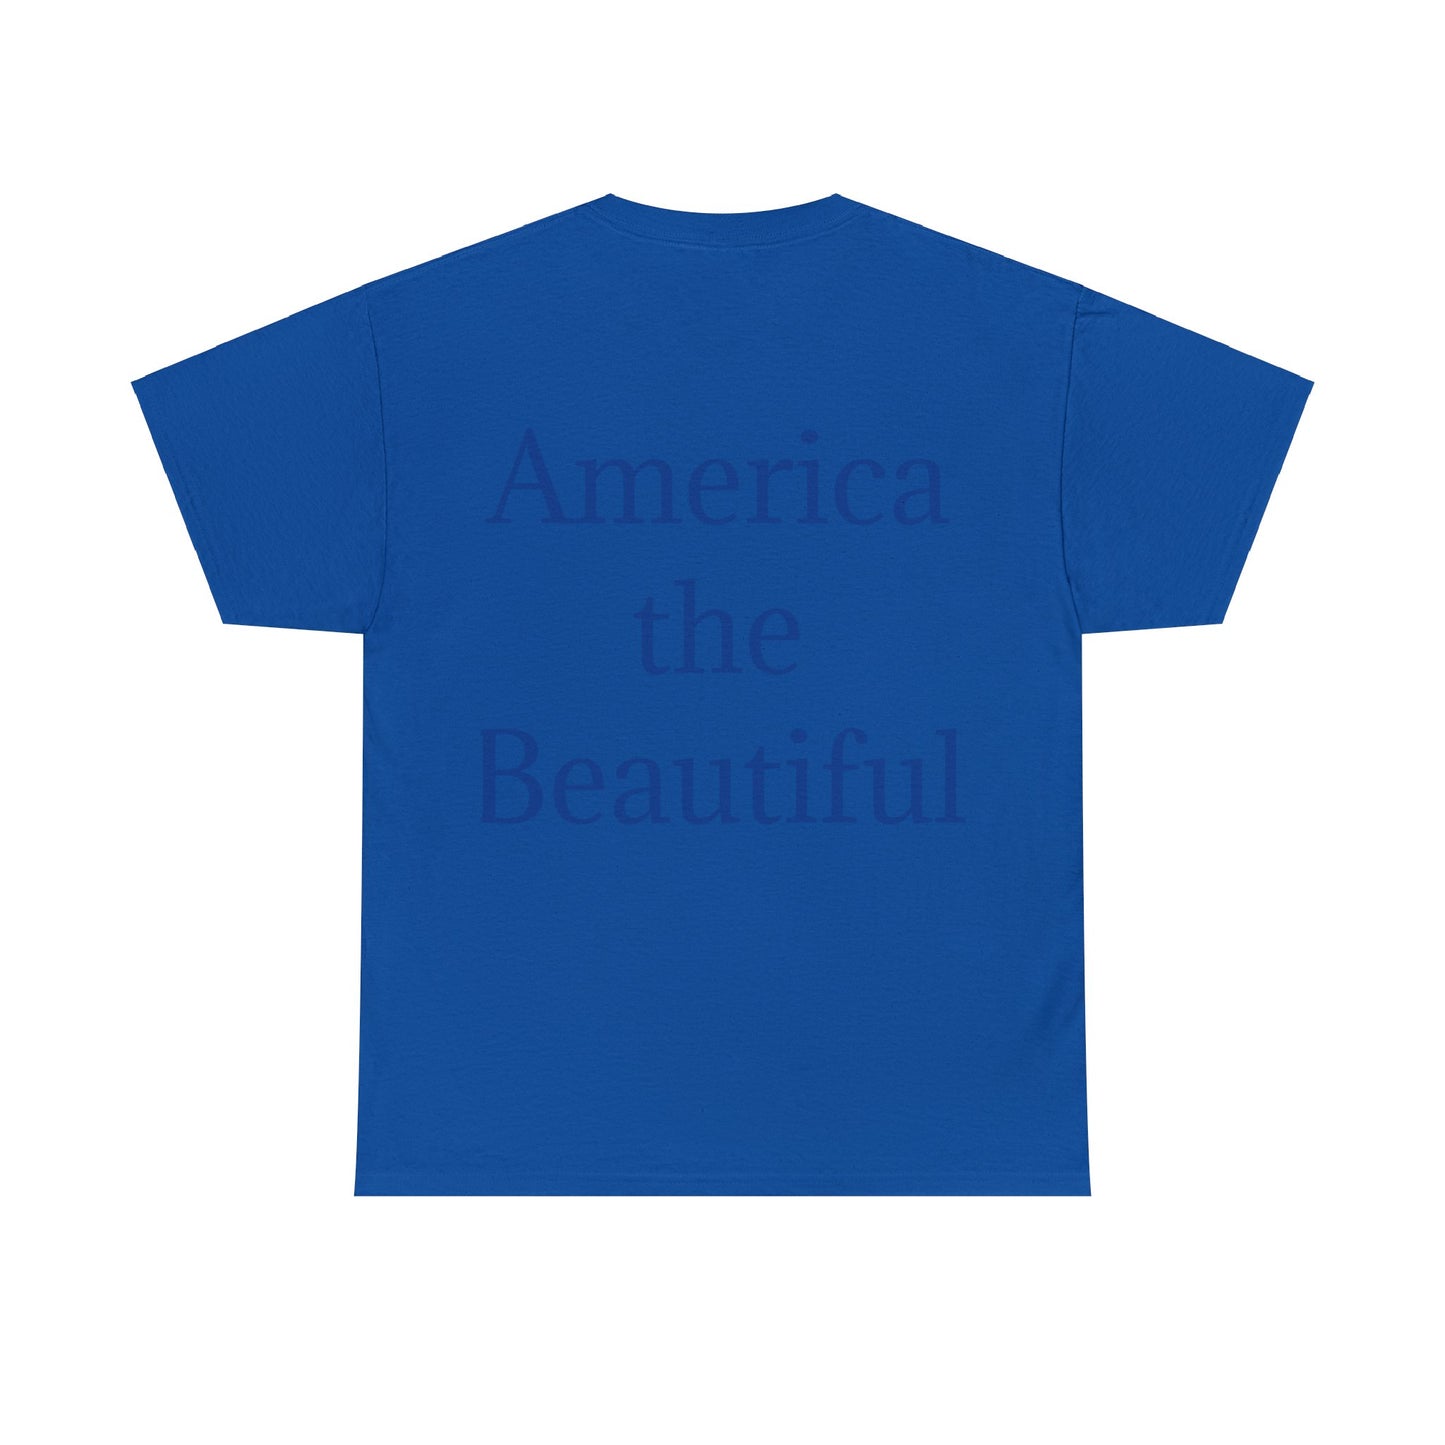 Beutiful American Statue of Liberty T-Shirt